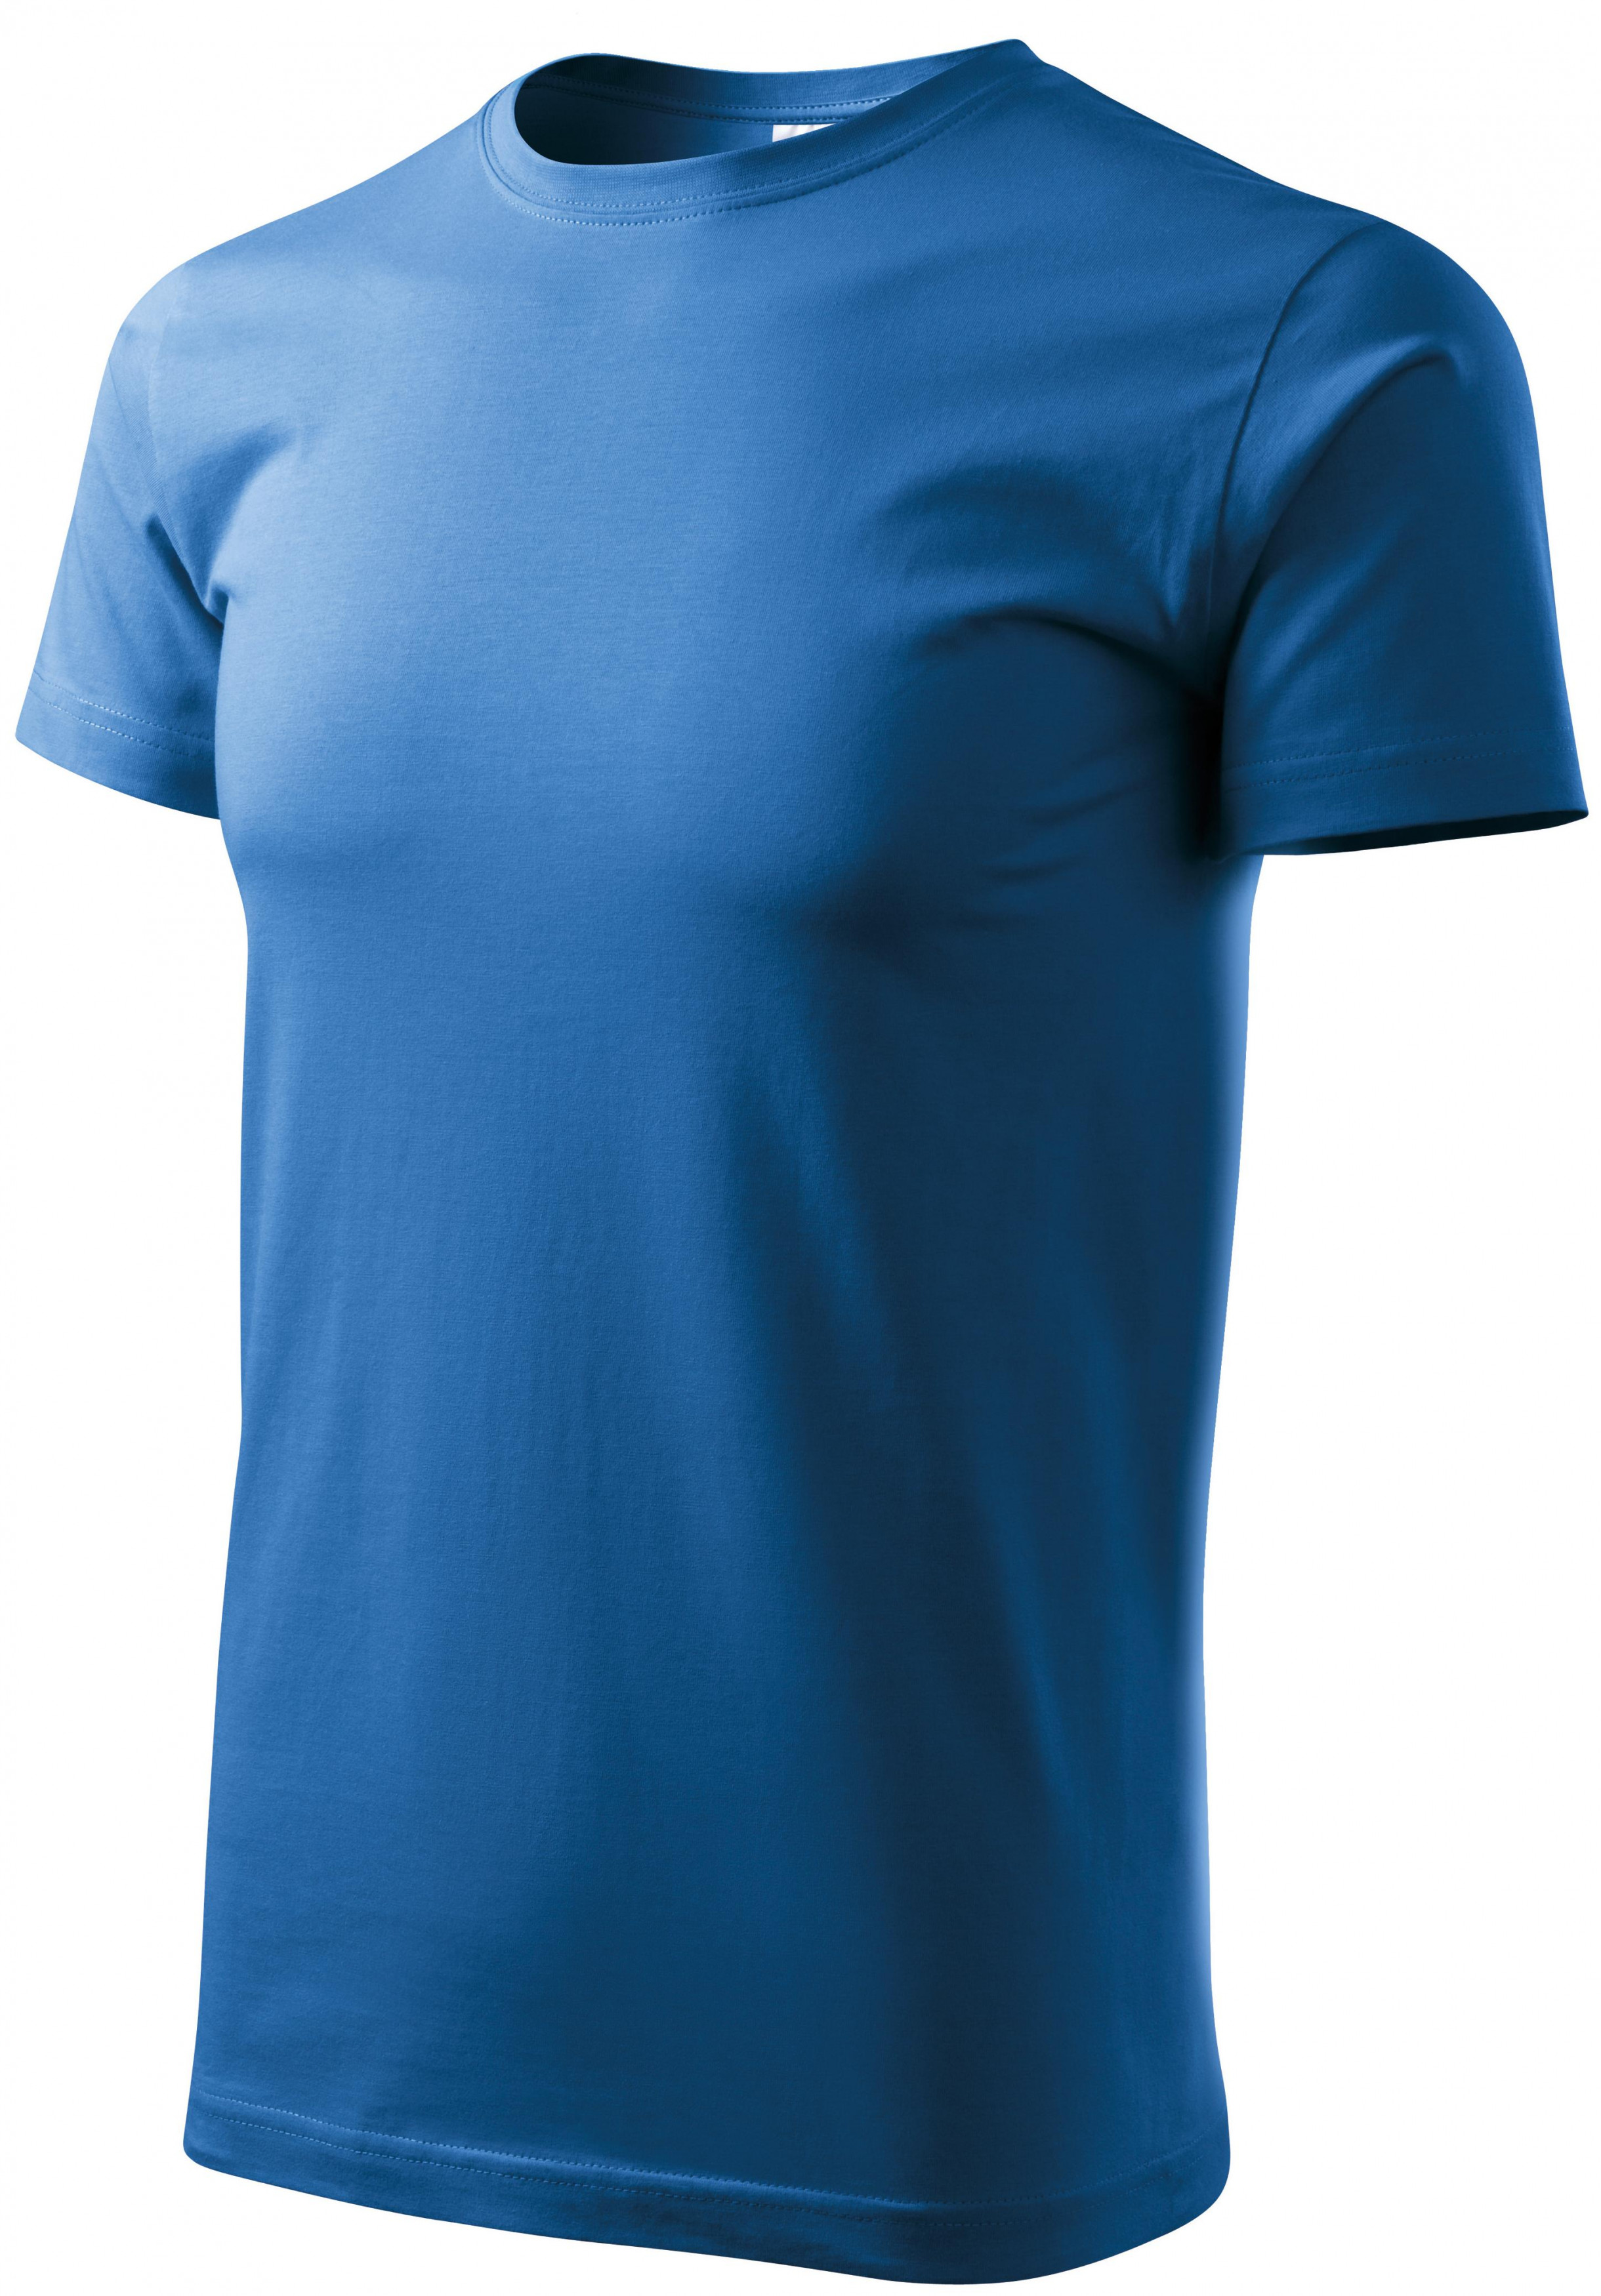 Unisex nagyobb súlyú póló, világoskék, 2XL